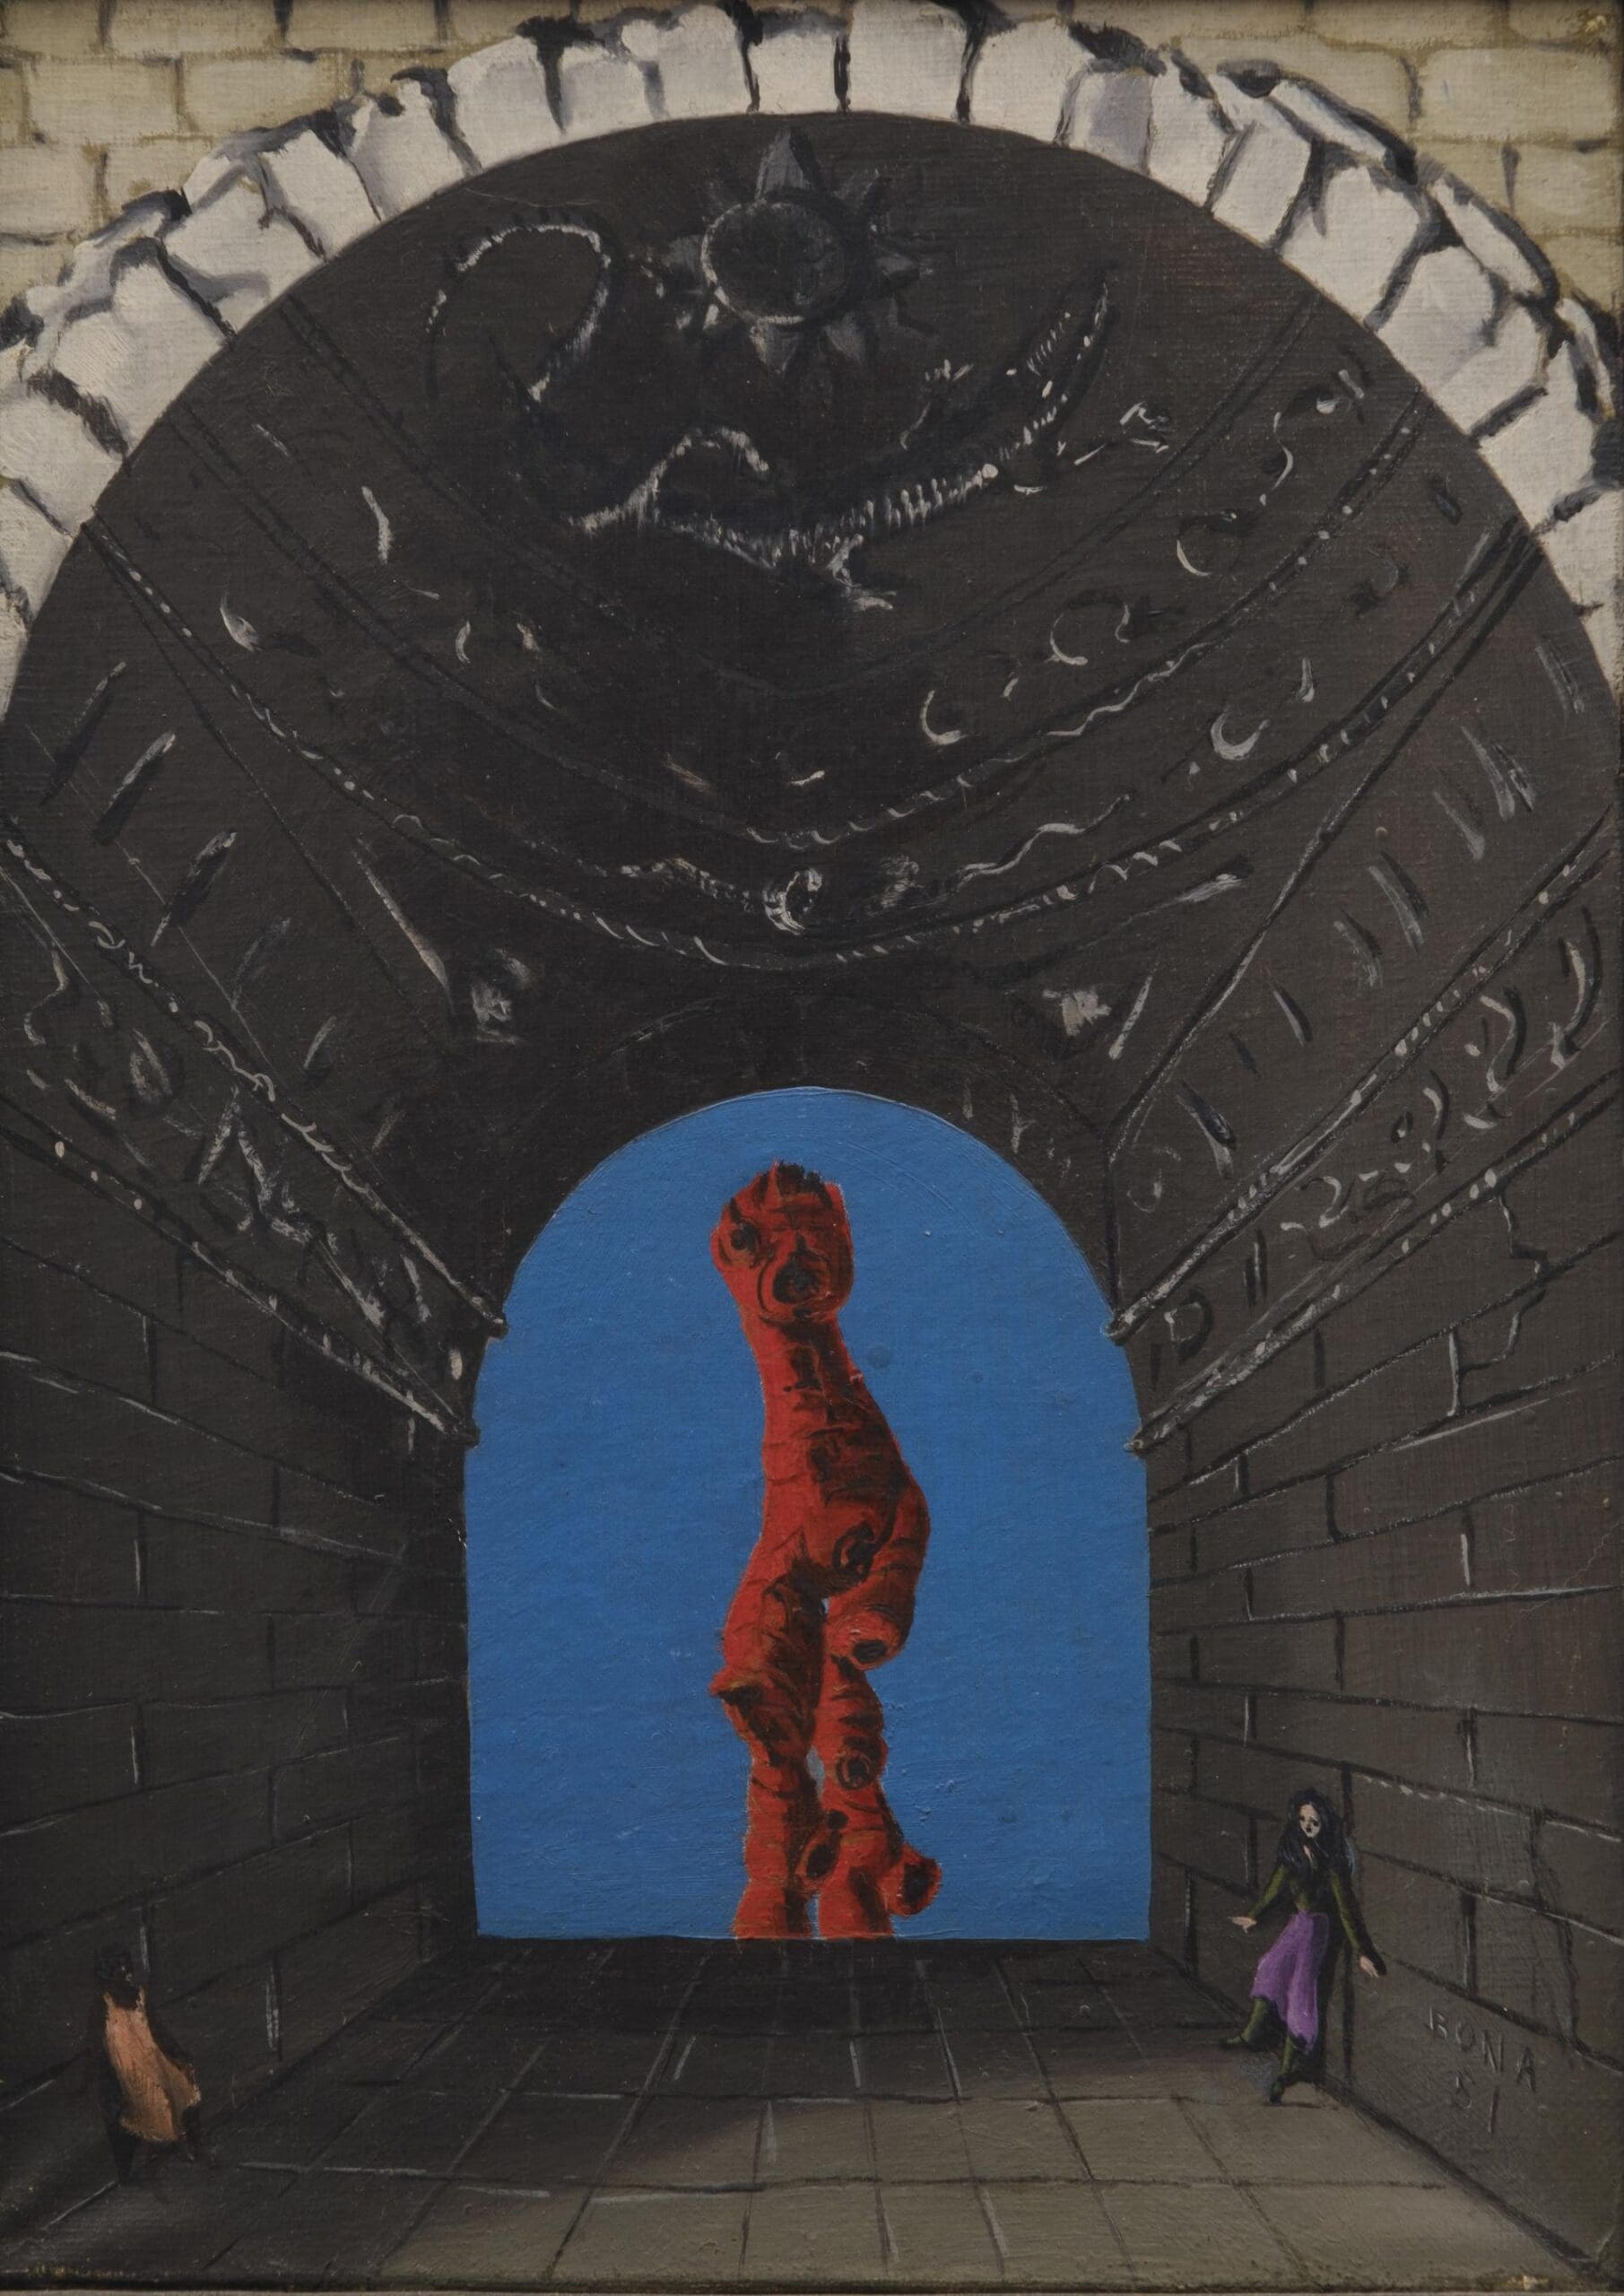 Al Museo Nivola: la mostra "Rifare il Mondo" Bona de Mandiargues. 71 opere tra 1950 e 1997, l'immaginario surrealista, la lumaca come simbolo